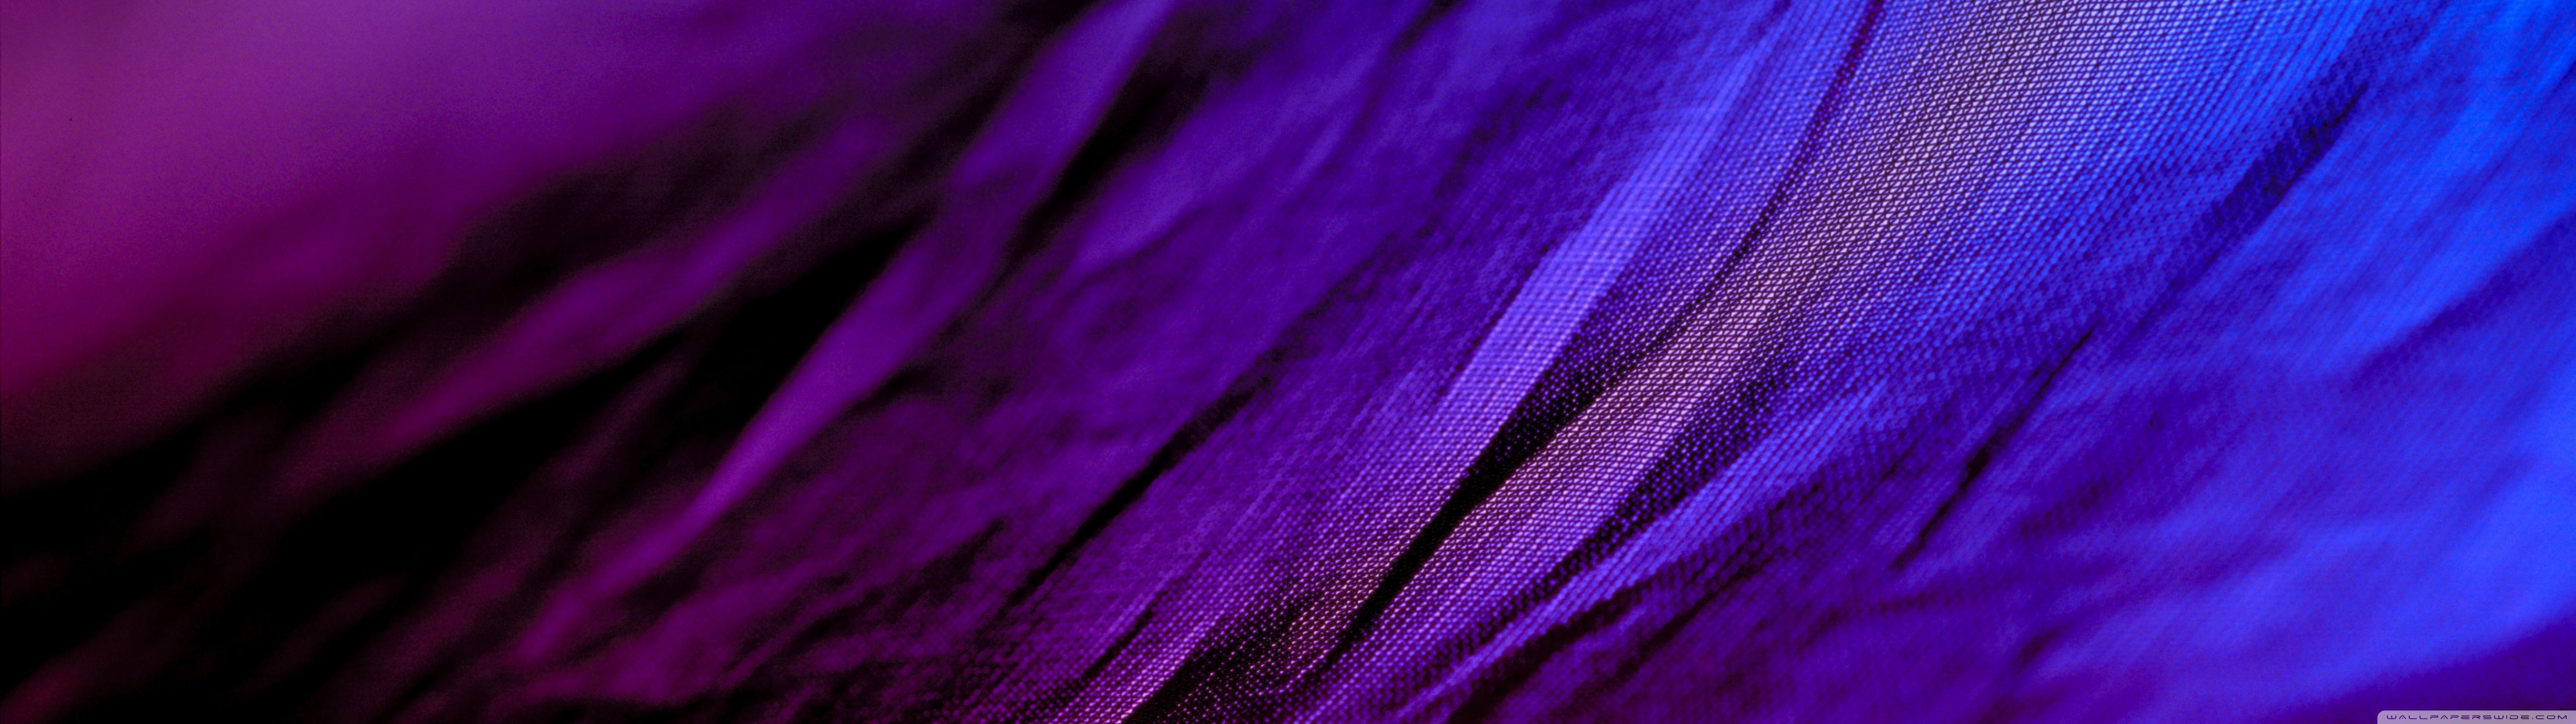 Purple: Màu tím là một màu sắc đầy quyến rũ, tinh tế và đầy cá tính. Hãy cùng ngắm nhìn bức ảnh liên quan đến màu tím để tận hưởng cảm giác thư giãn và tinh tế. Màu tím còn đại diện cho những điều may mắn và thanh lịch trong phong thủy, bạn còn chờ đợi gì mà không tìm hiểu thêm về màu sắc này?